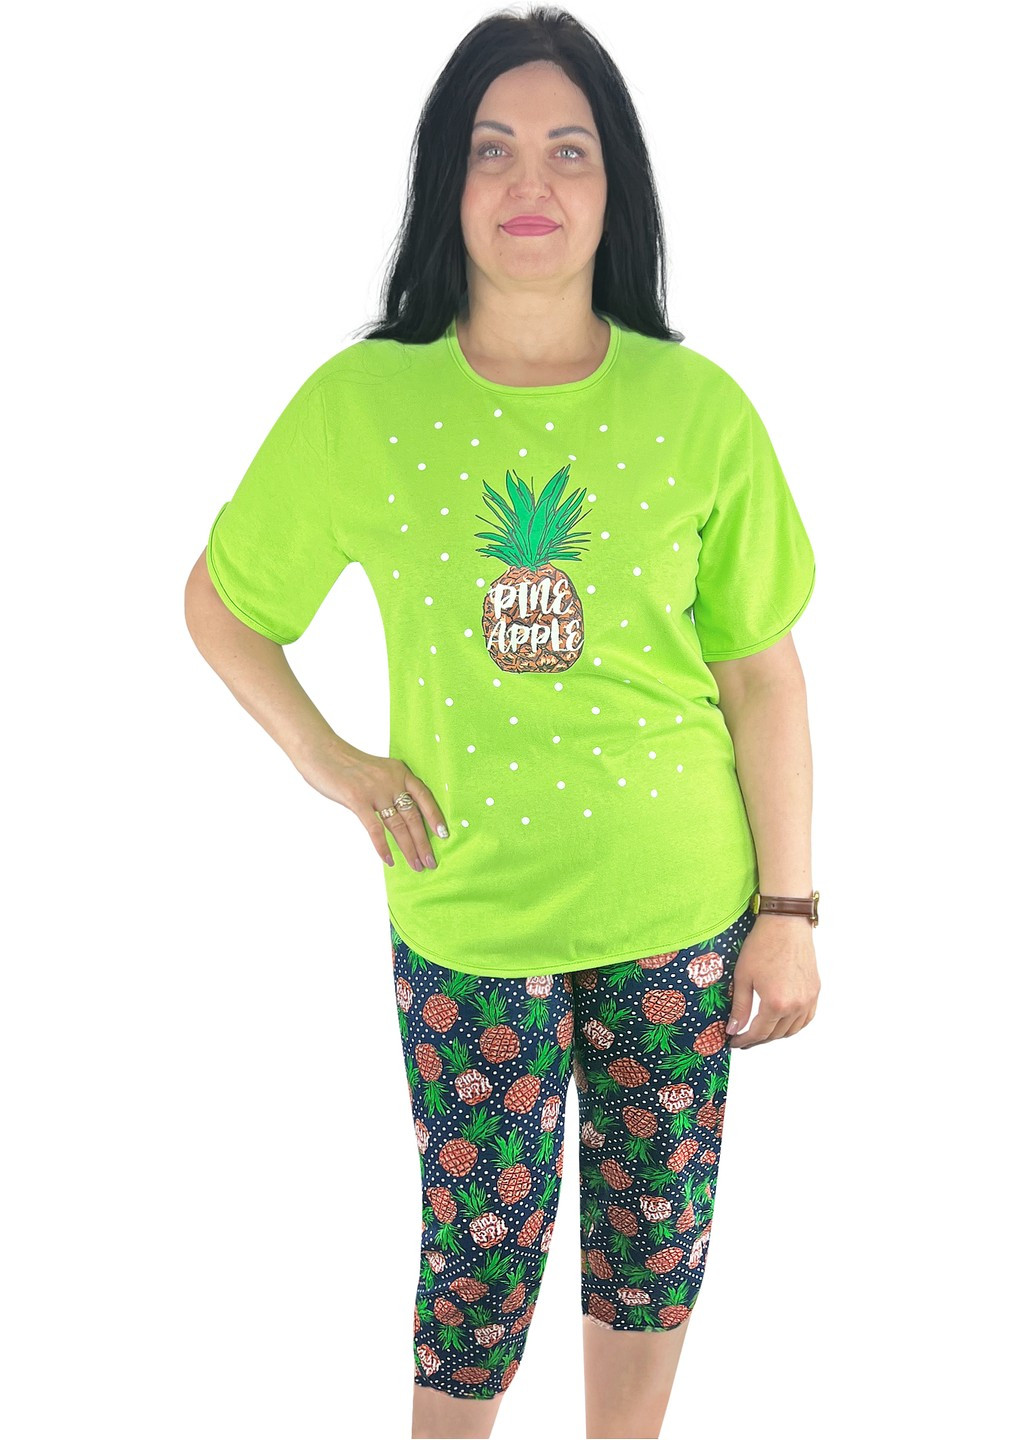 Салатовая всесезон пижама футболка и бриджи ананас футболка + бриджи Жемчужина стилей 4674